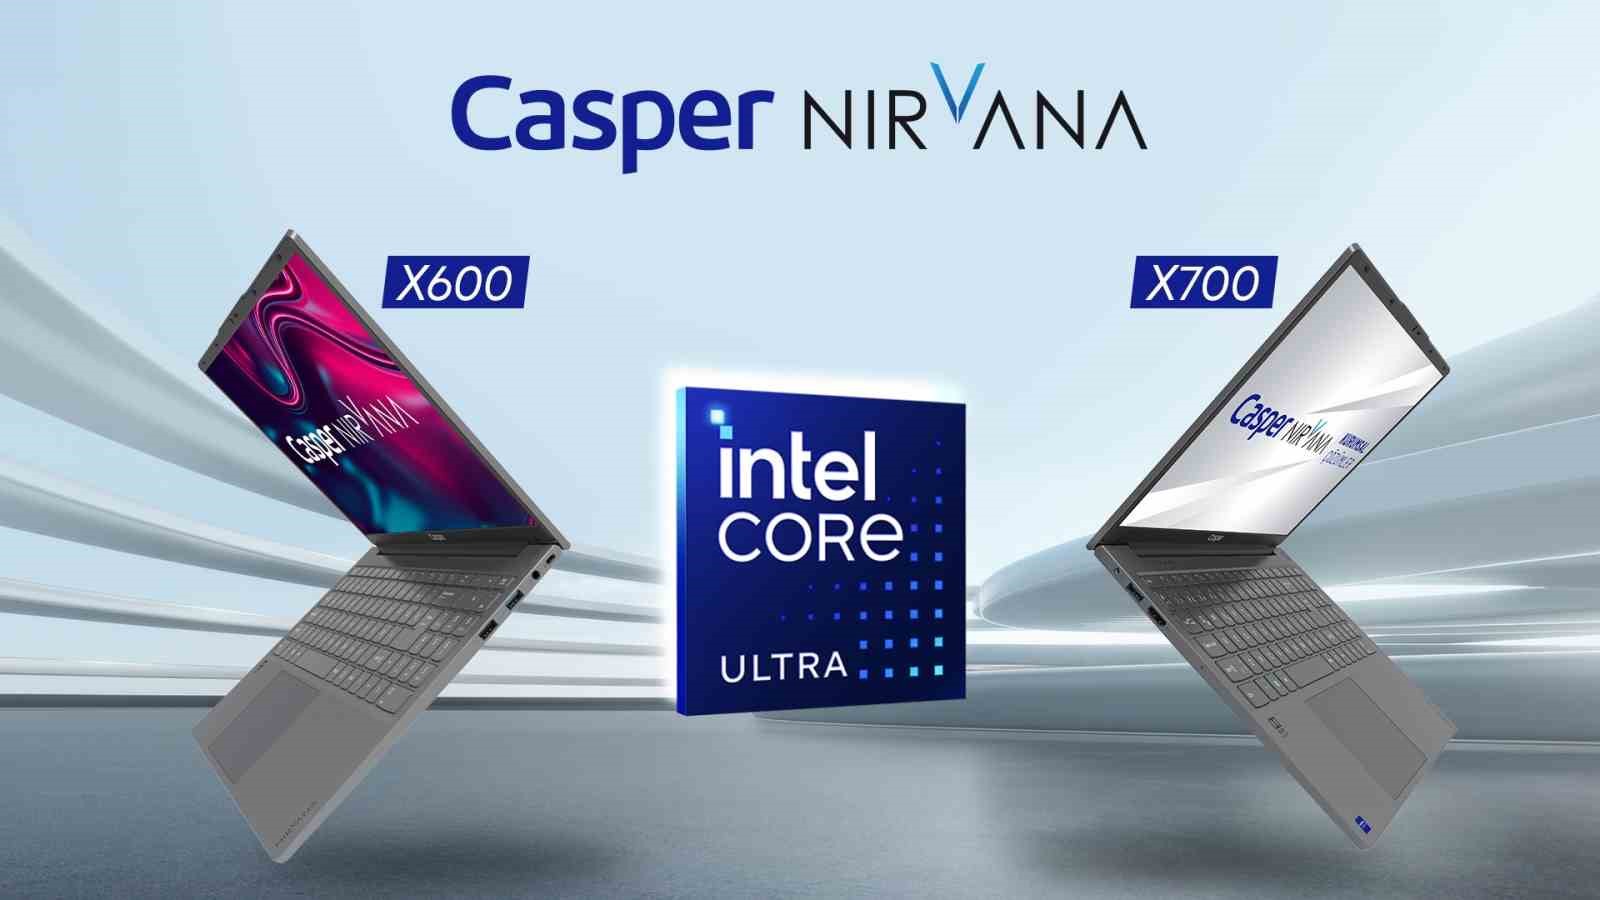 casper nirvana x600 ve x700 intel series 1 islemci ile yenilendi 0 9JYIraYz